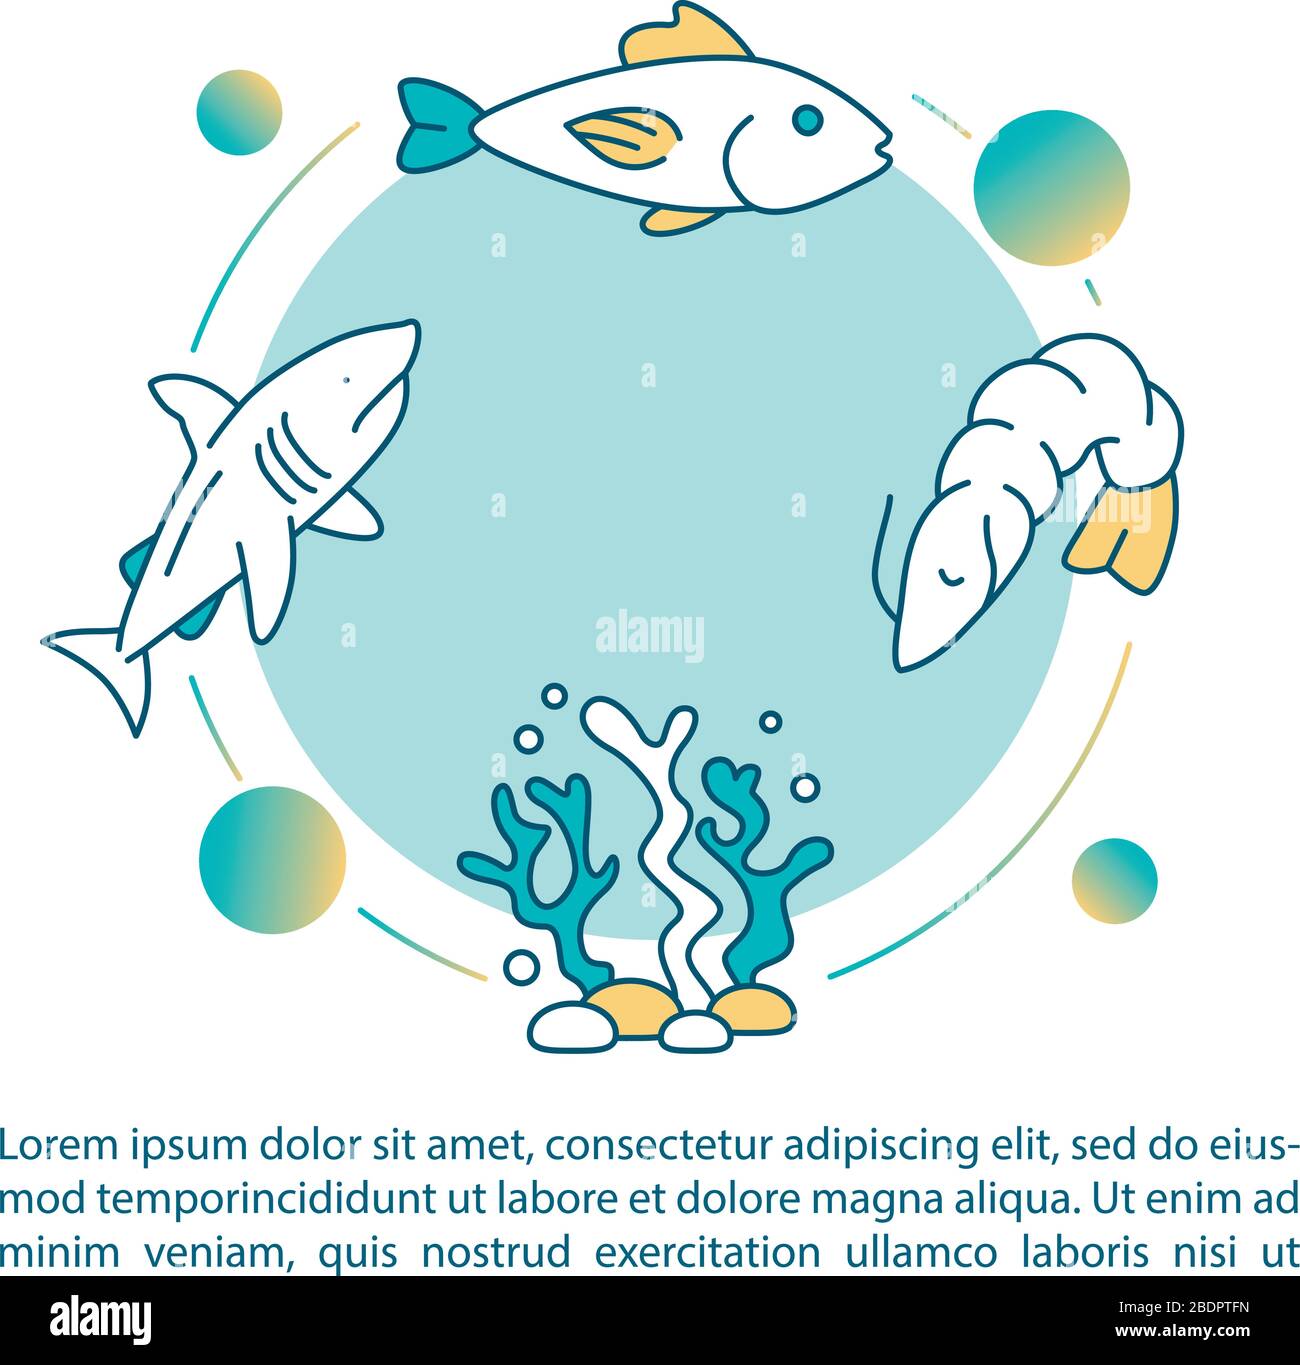 Icona del concetto di catena alimentare acquatica con testo. Alghe, plancton e pesce. Modellazione ecologica. Modello di vettore di pagina PPT. Brochure, riviste, opuscoli Illustrazione Vettoriale